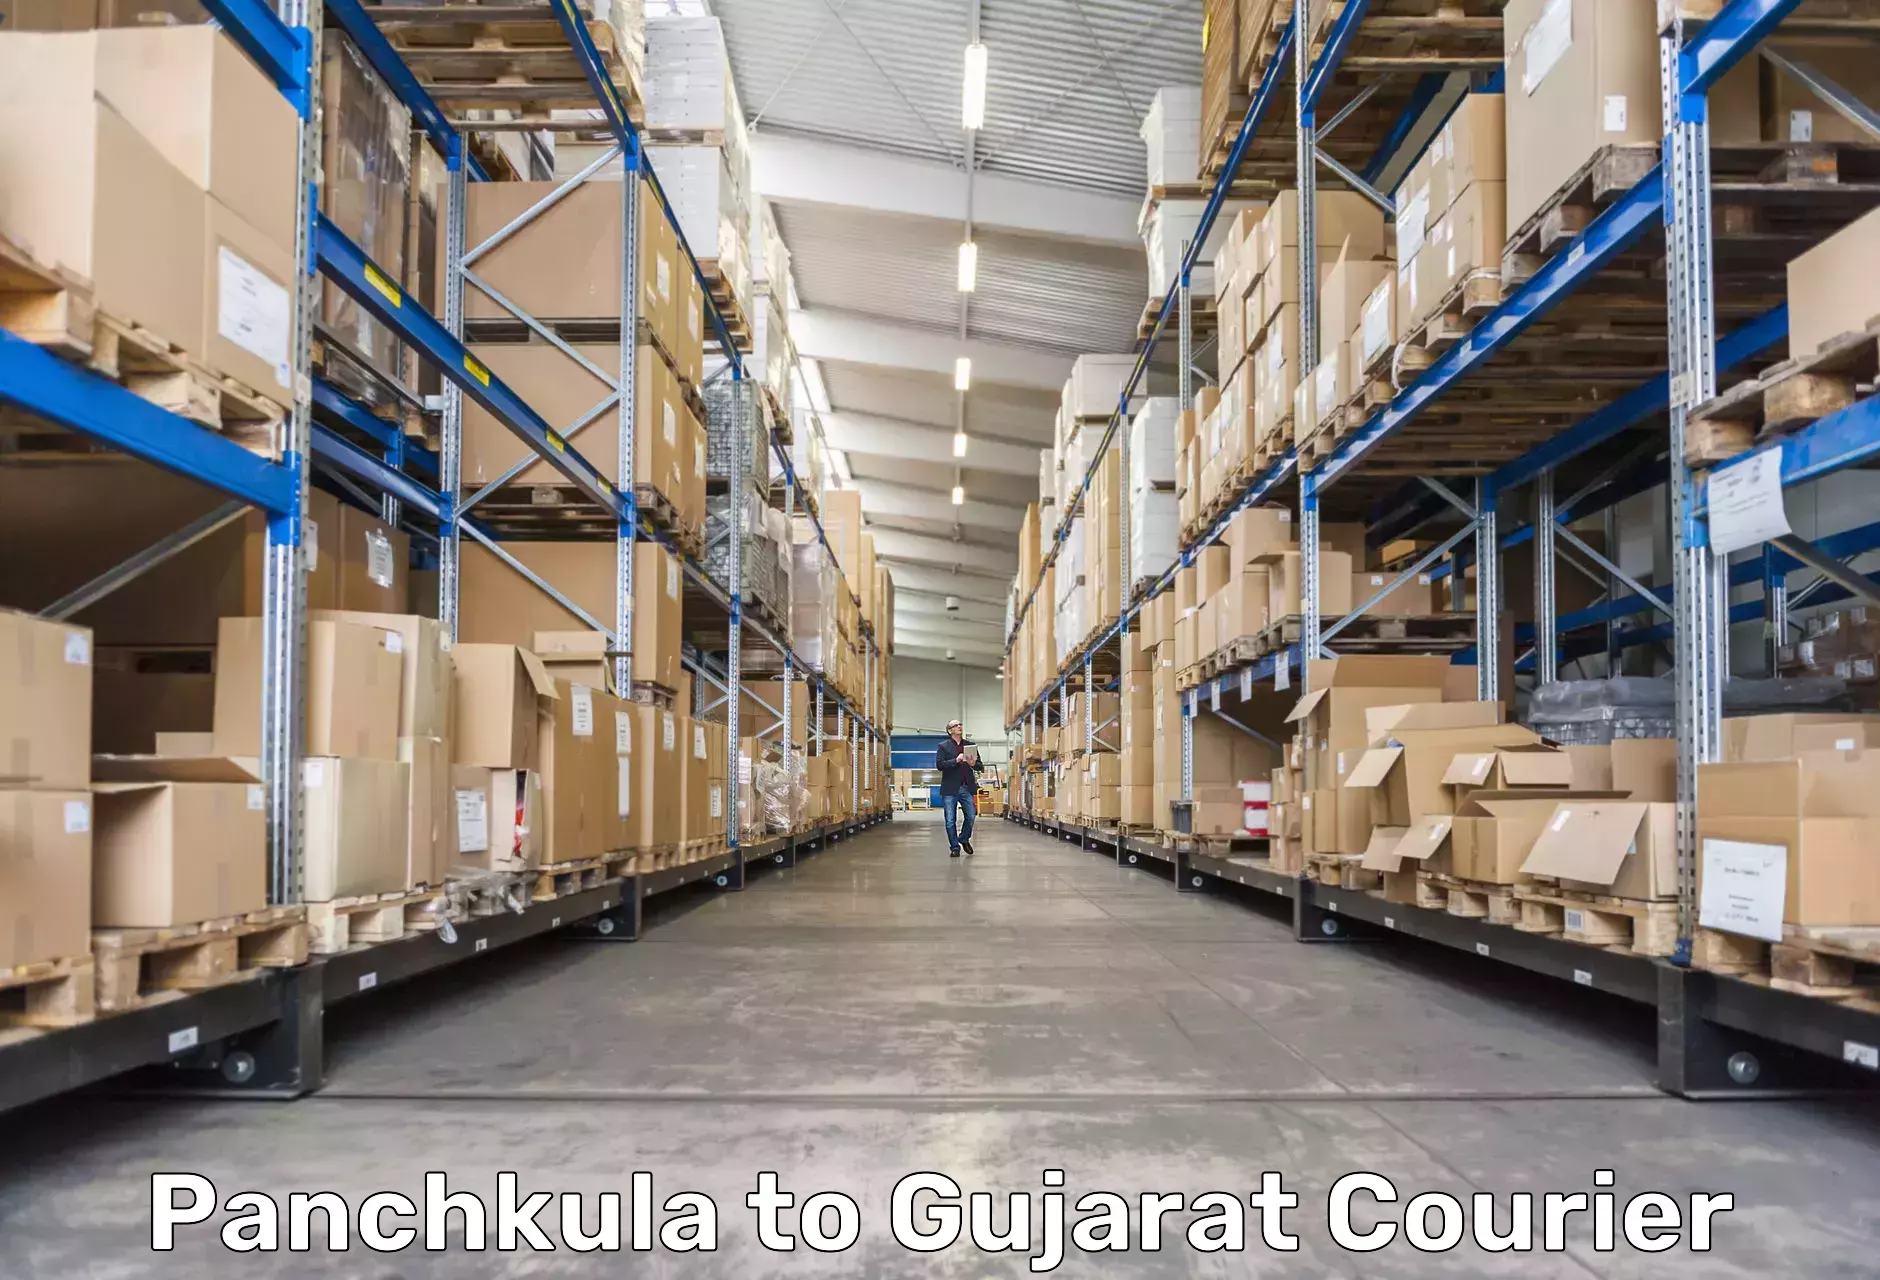 Comprehensive shipping network Panchkula to Kandla Port